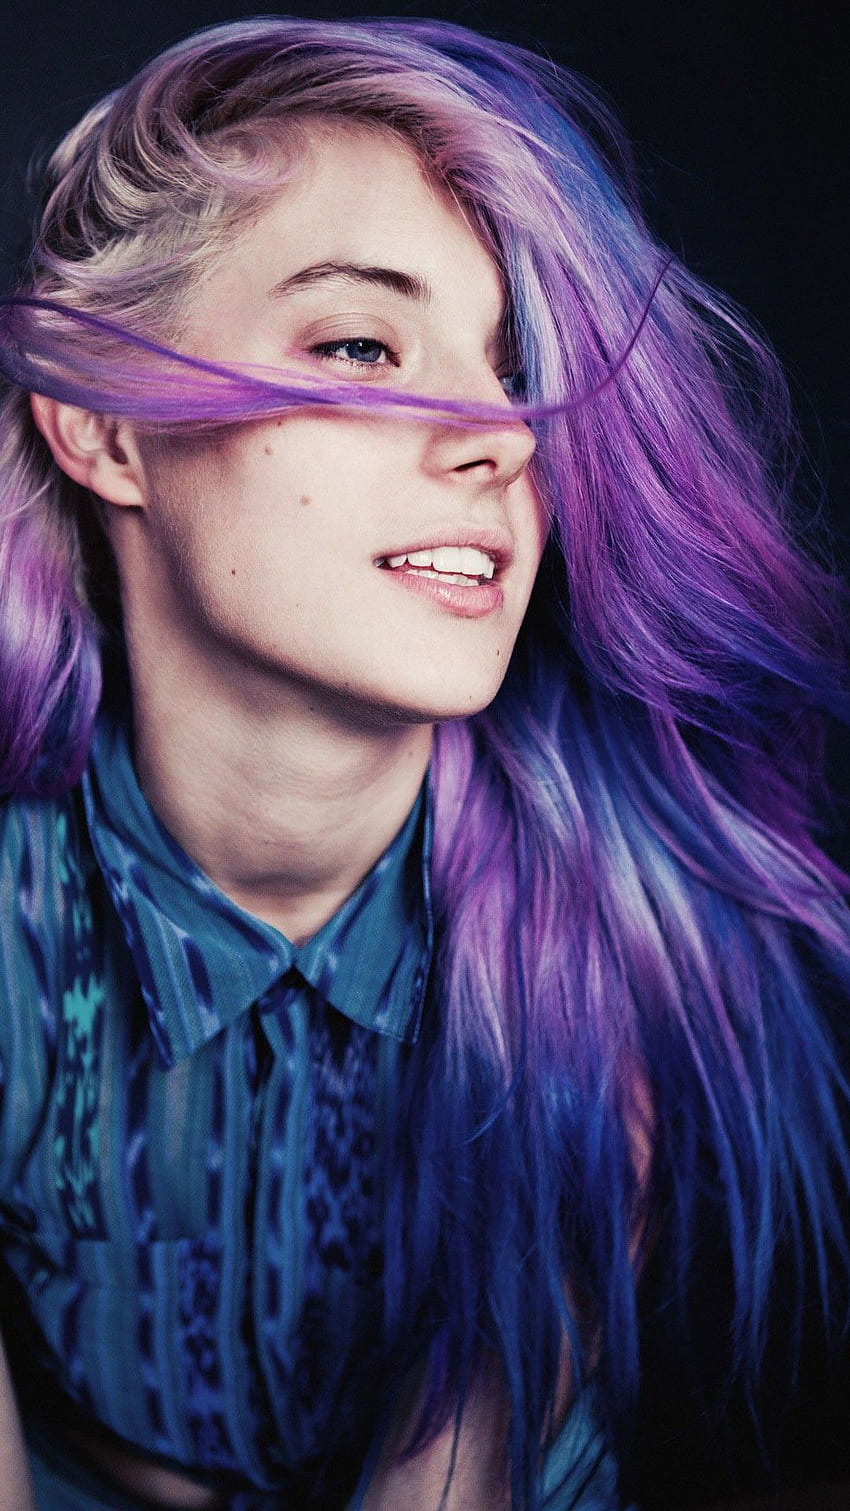 Chloe Norgaard Mobile . Best hair dye, Hair color techniques, Wild hair color, Rainbow Hair HD phone wallpaper